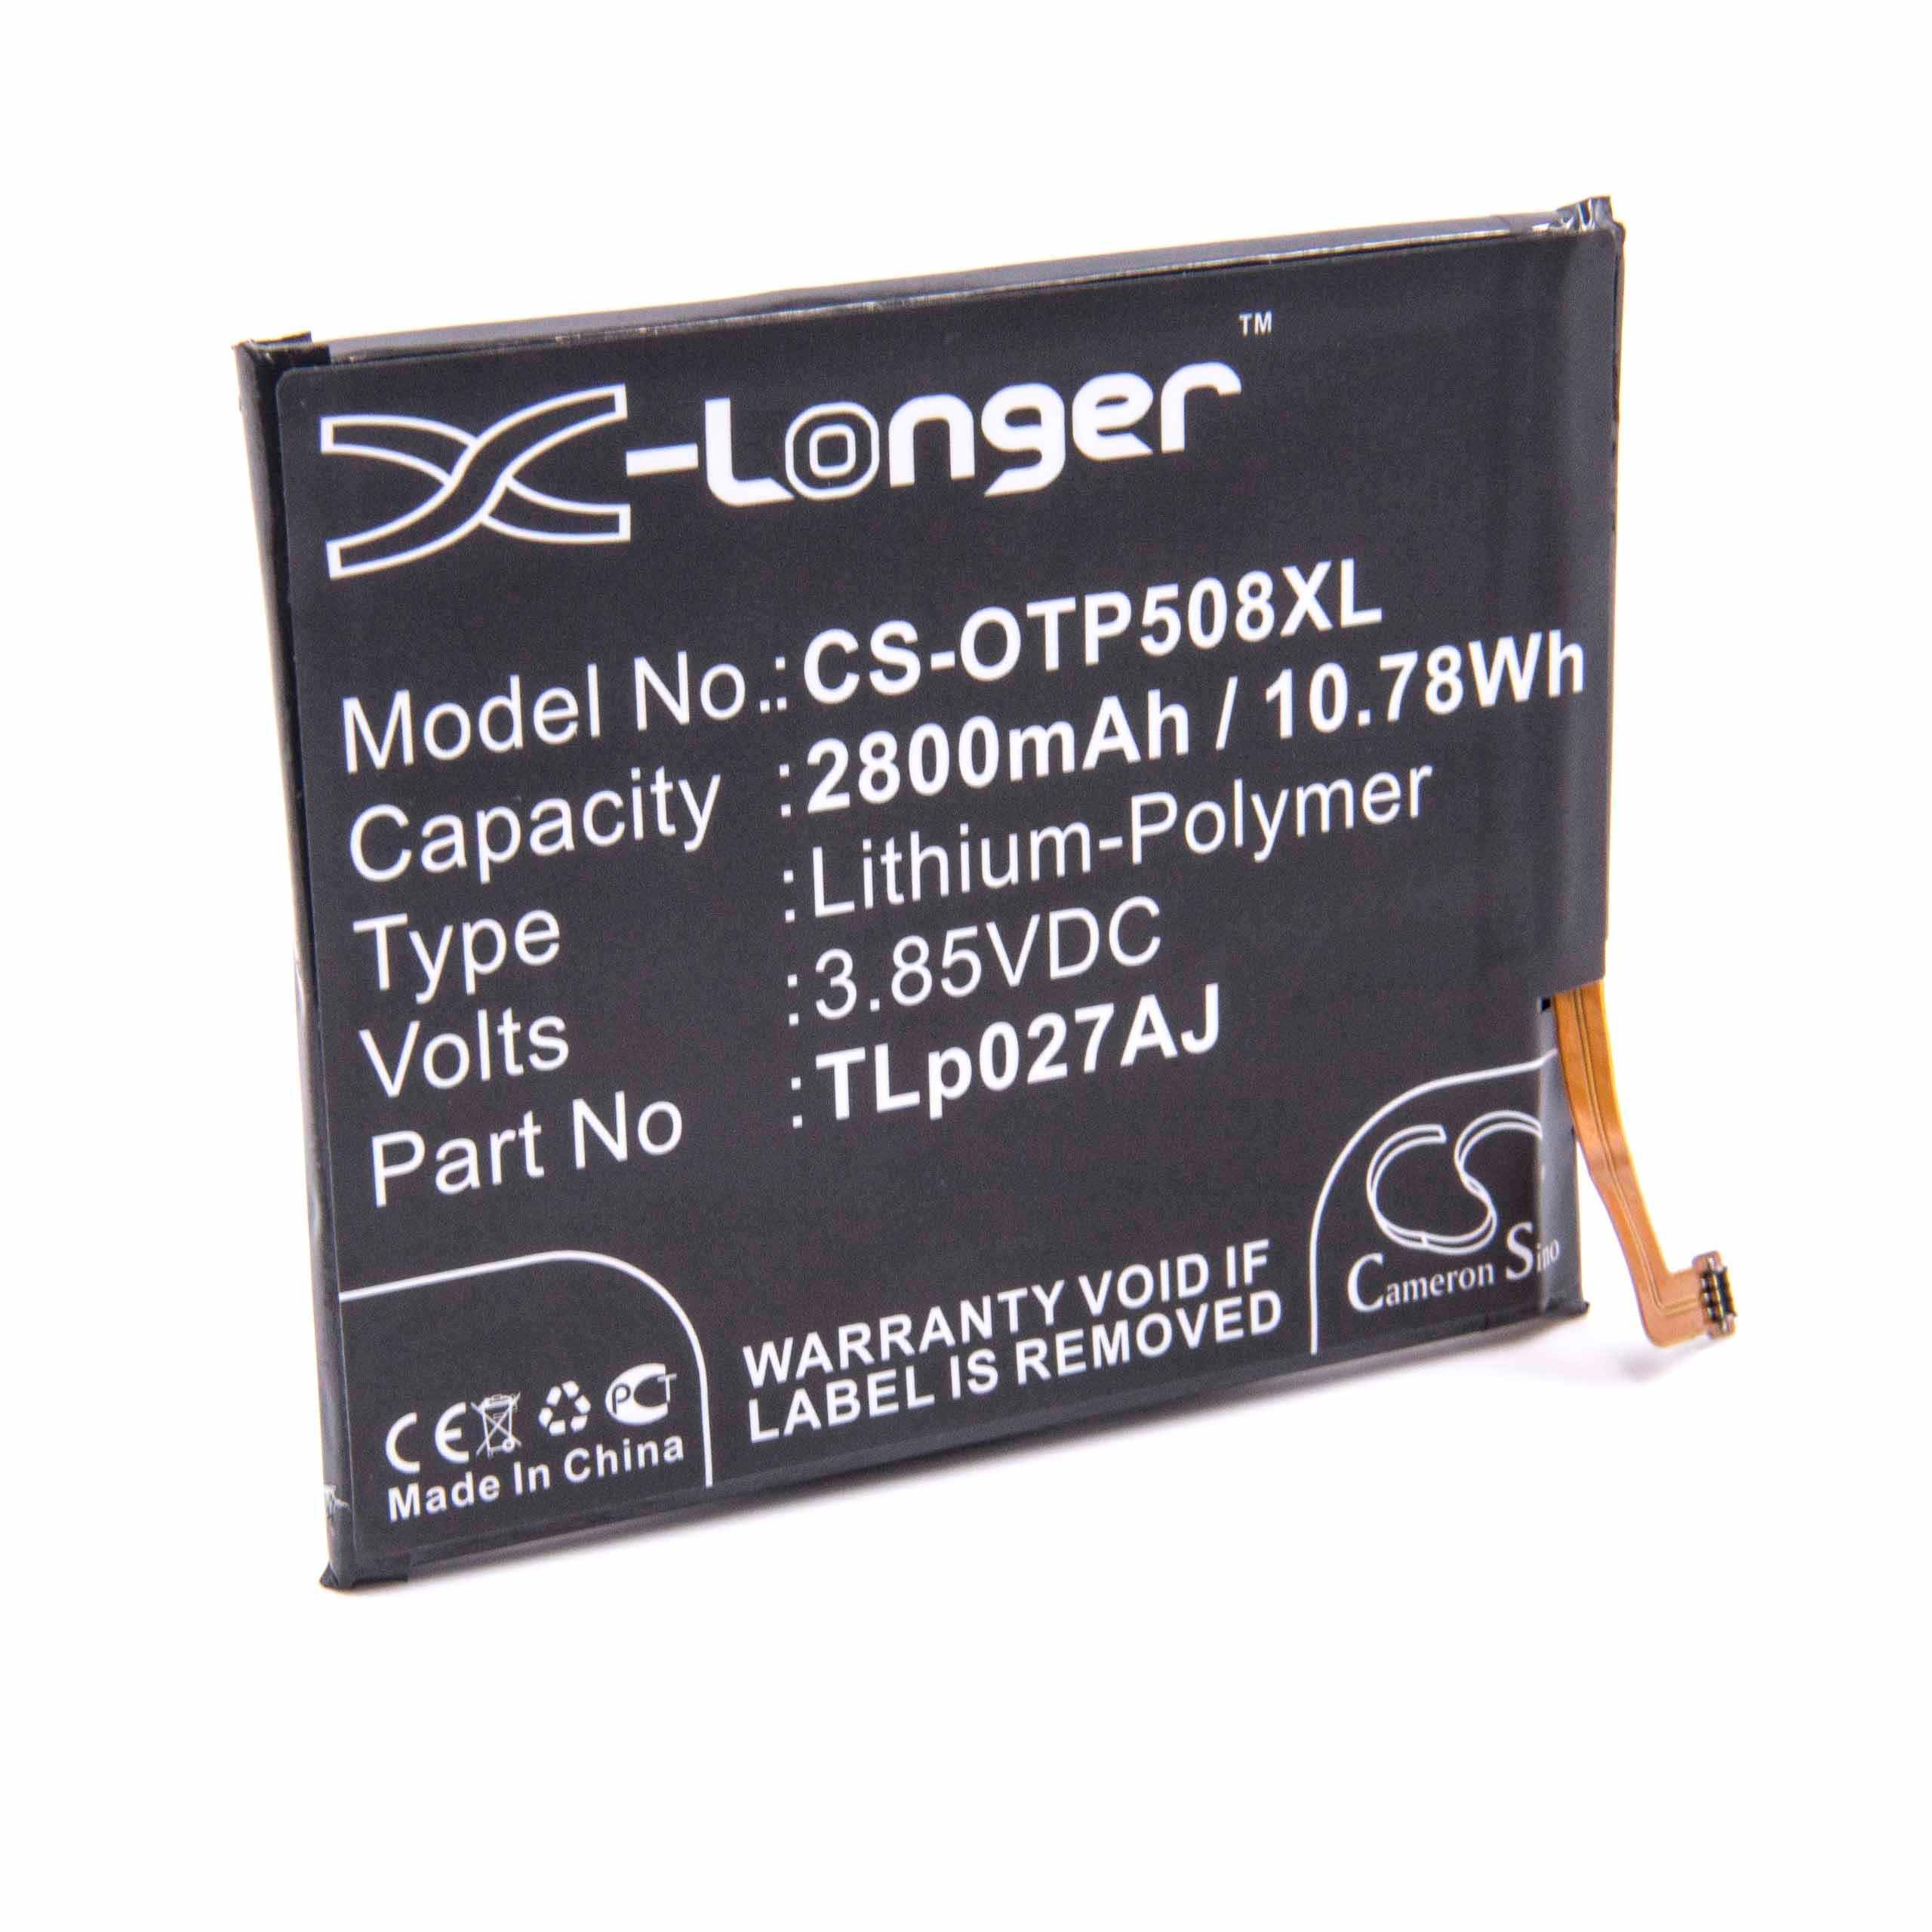 Batterie remplace Alcatel TLp027AJ pour téléphone portable - 2800mAh, 3,85V, Li-polymère